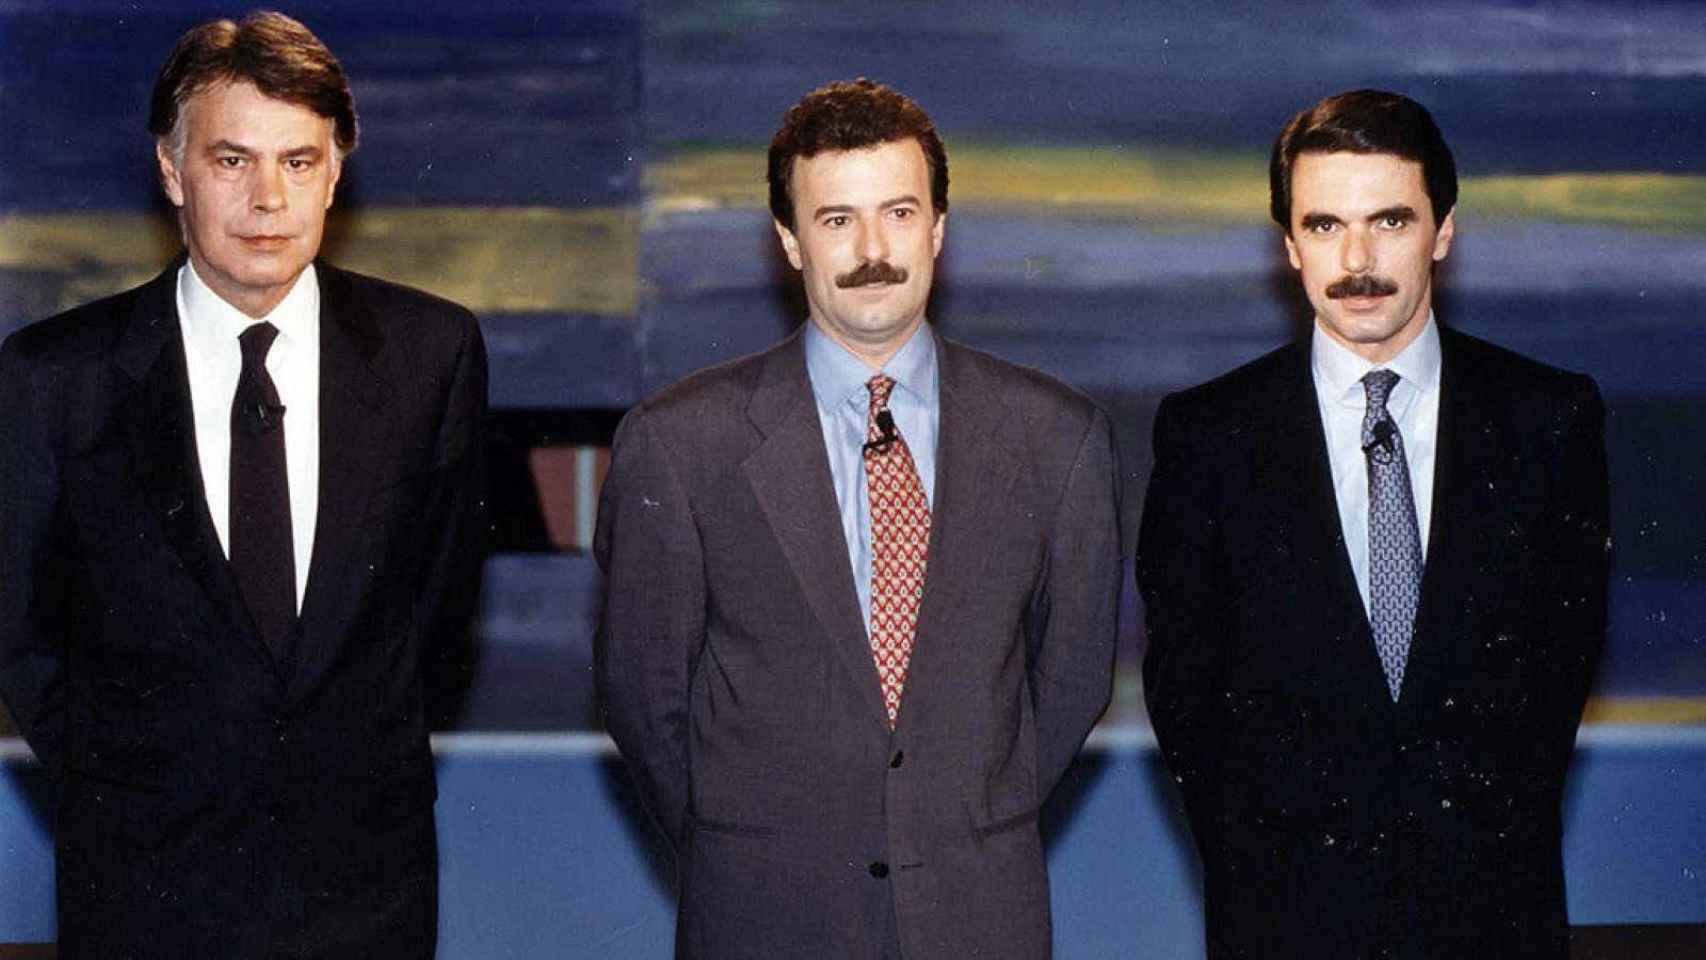 El cara a cara entre Felipe González y José María Aznar en 1993 sigue siendo el debate más visto de la historia.